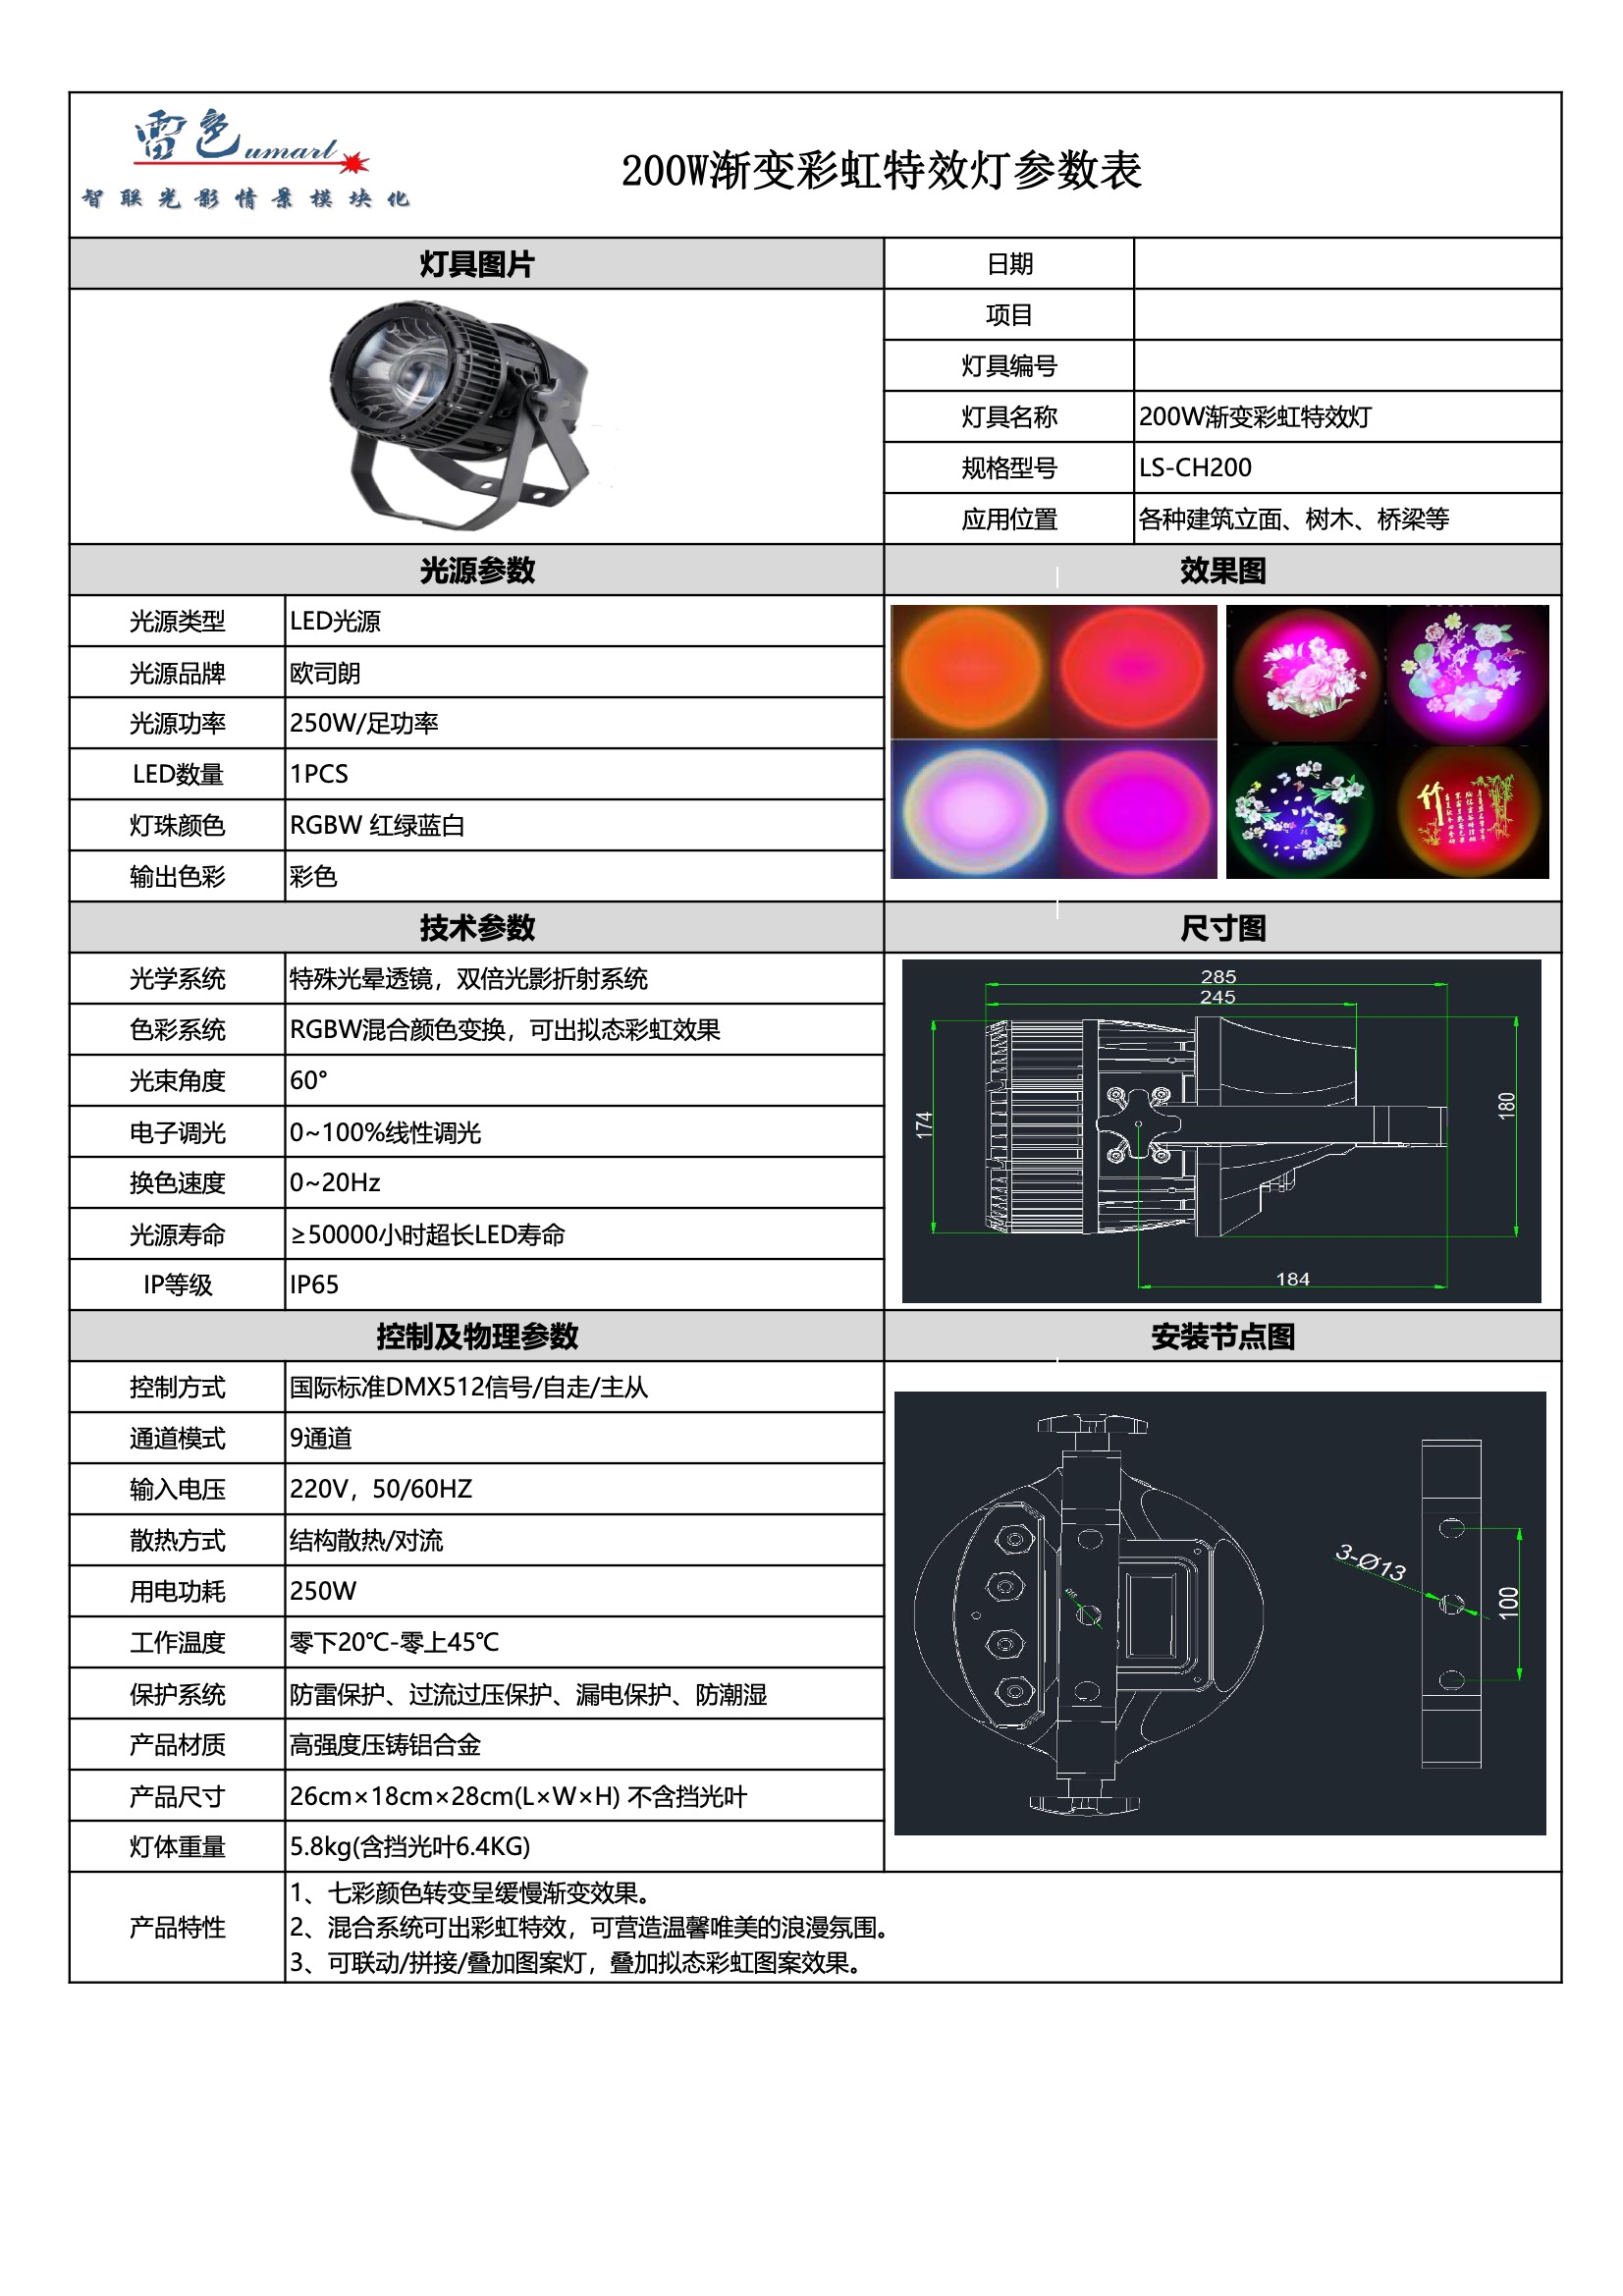 渐变彩虹特效灯 LS-GH200(图1)